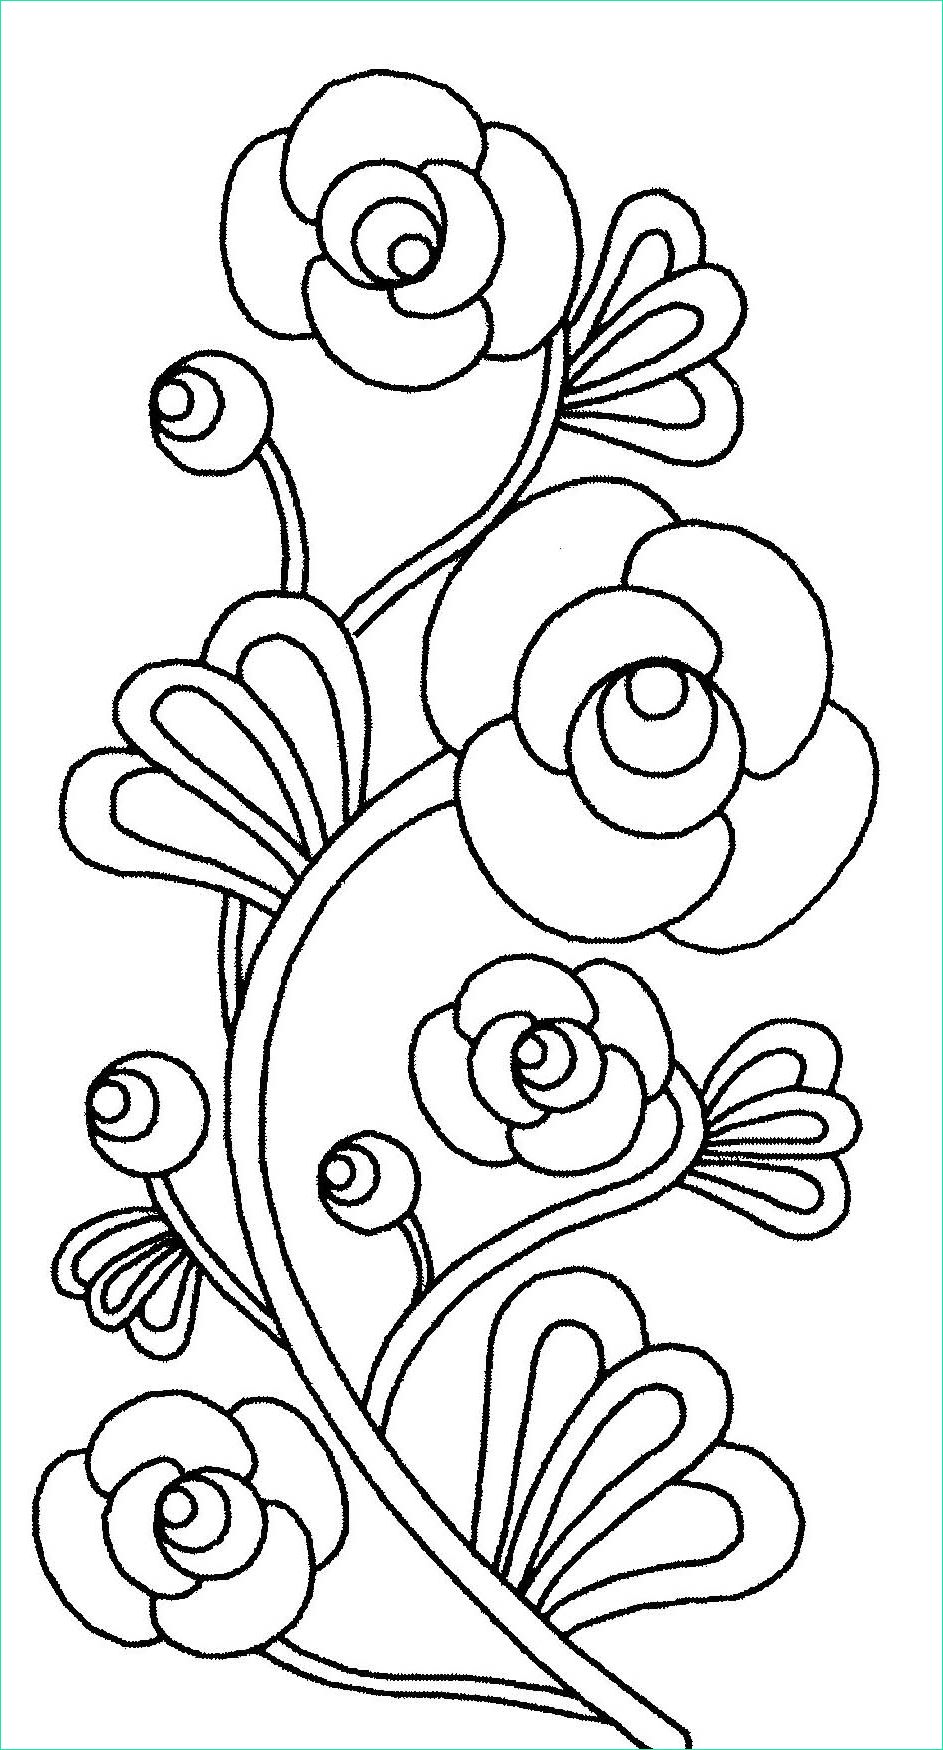 Dessin De Fleur A Imprimer Et A Colorier Beau Stock Image De Fleurs à Imprimer Et Colorier Coloriage De